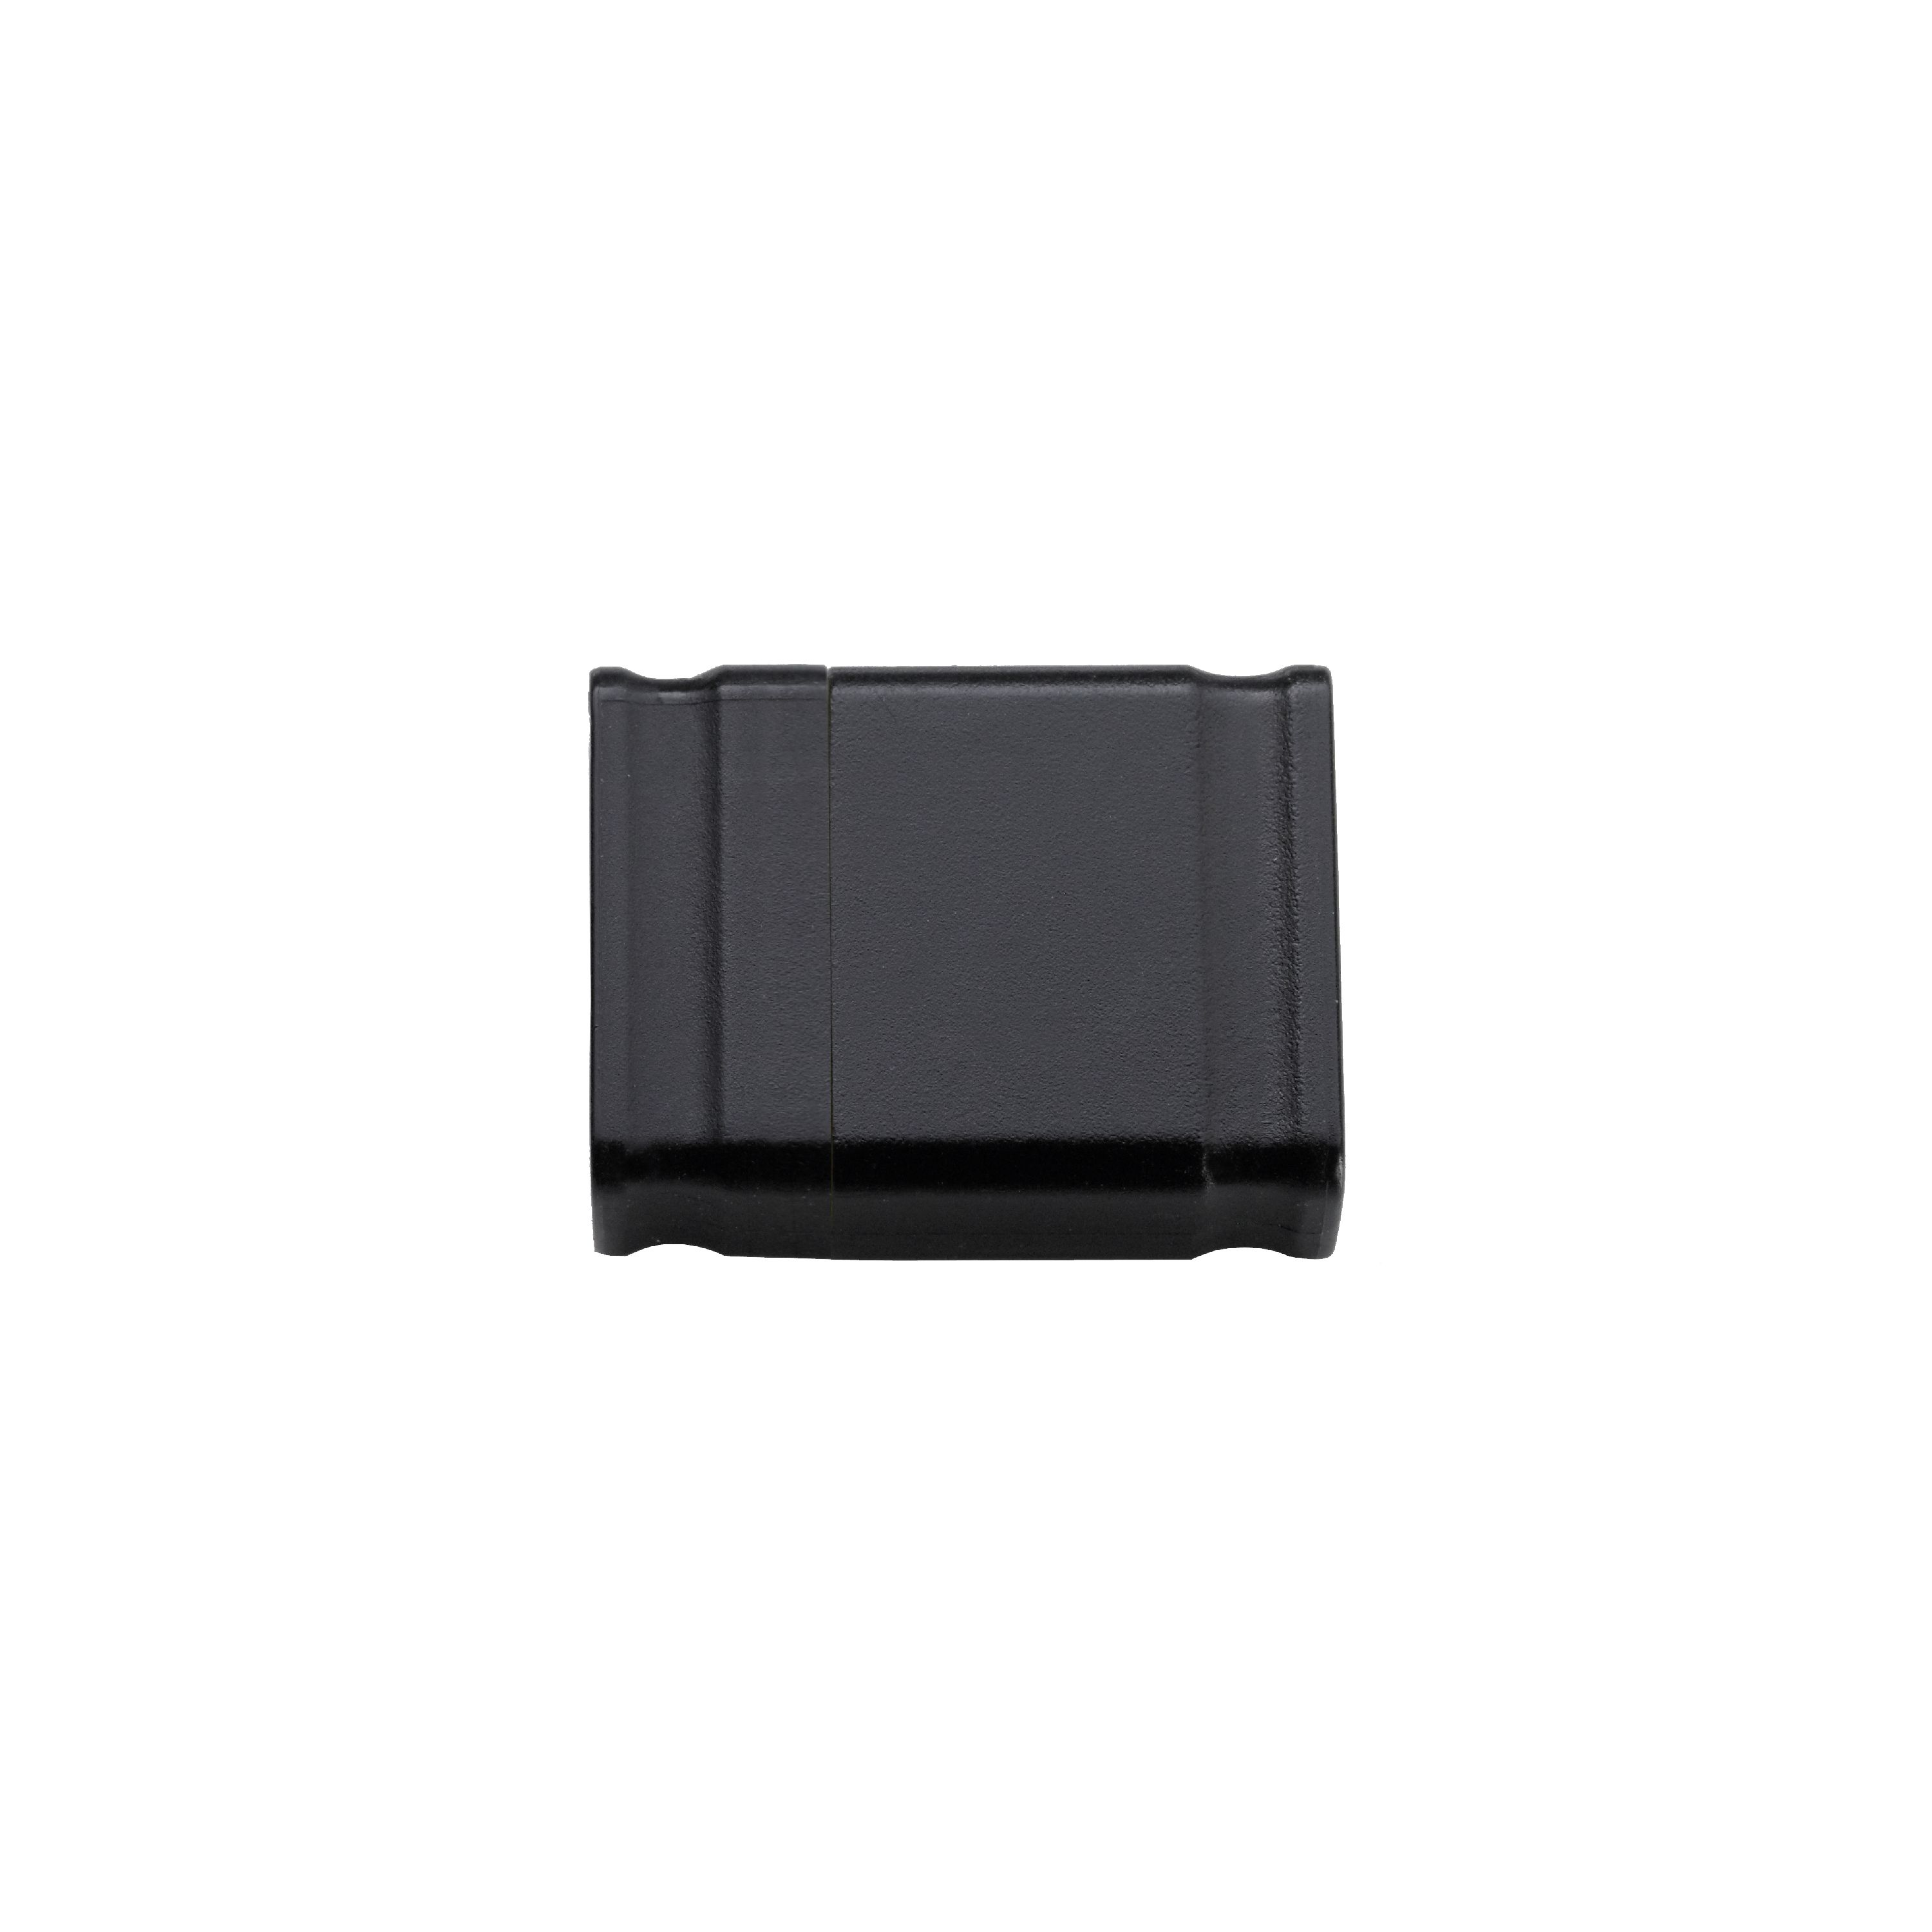 Intenso Micro Line USB-Stick 4 GB USB Typ-A 2.0 Schwarz